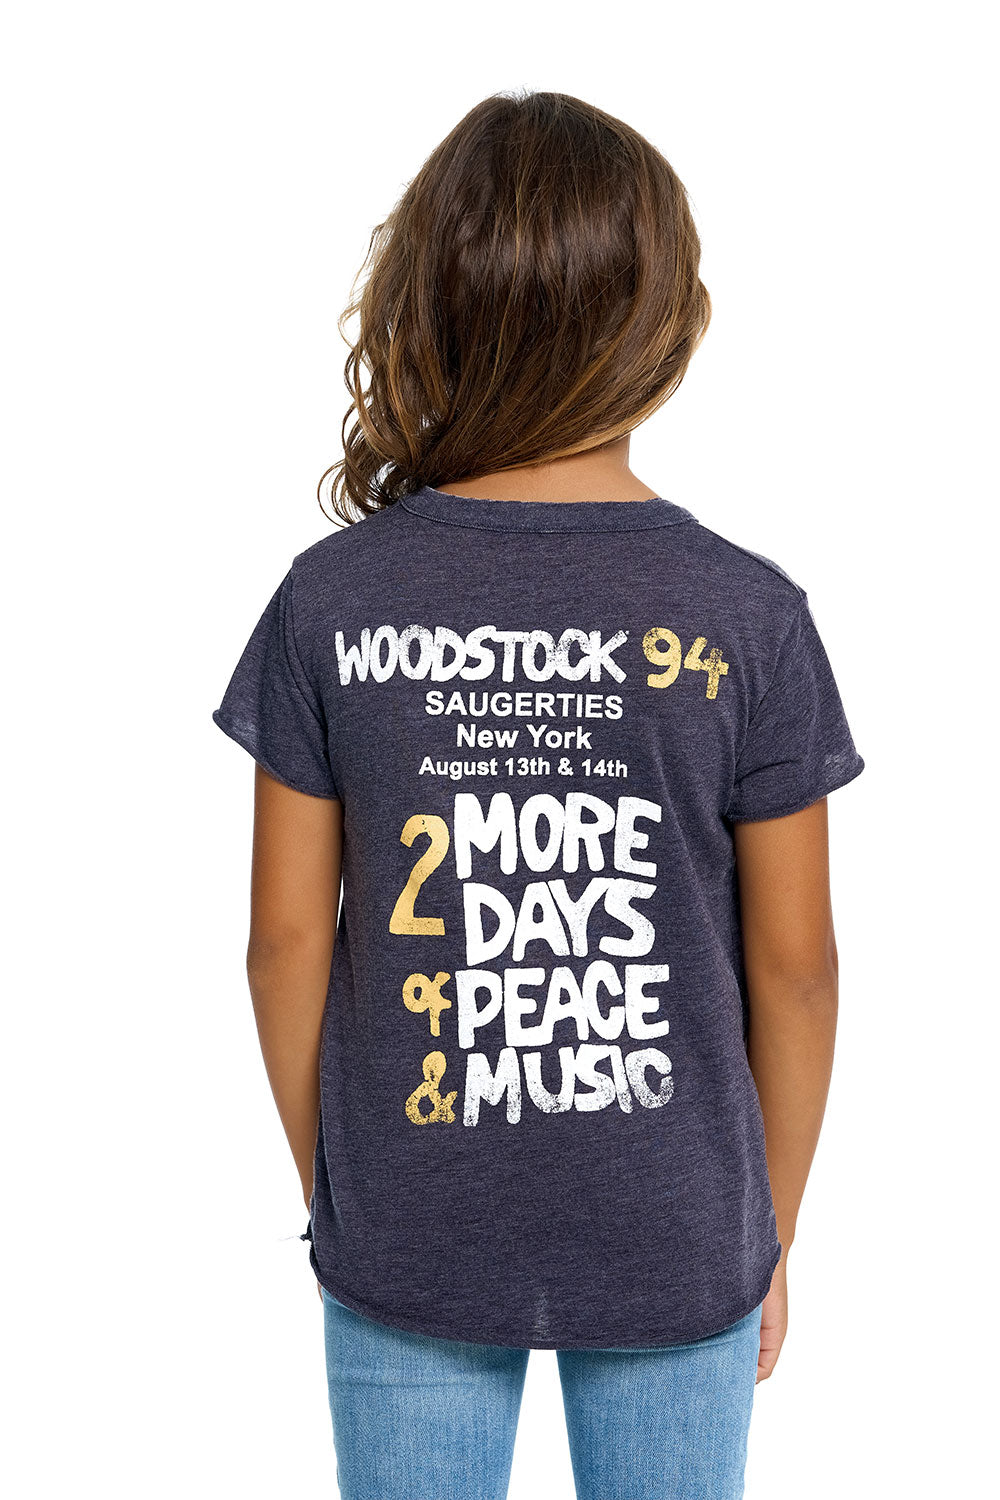 Woodstock - Woodstock 94 GIRLS chaserbrand